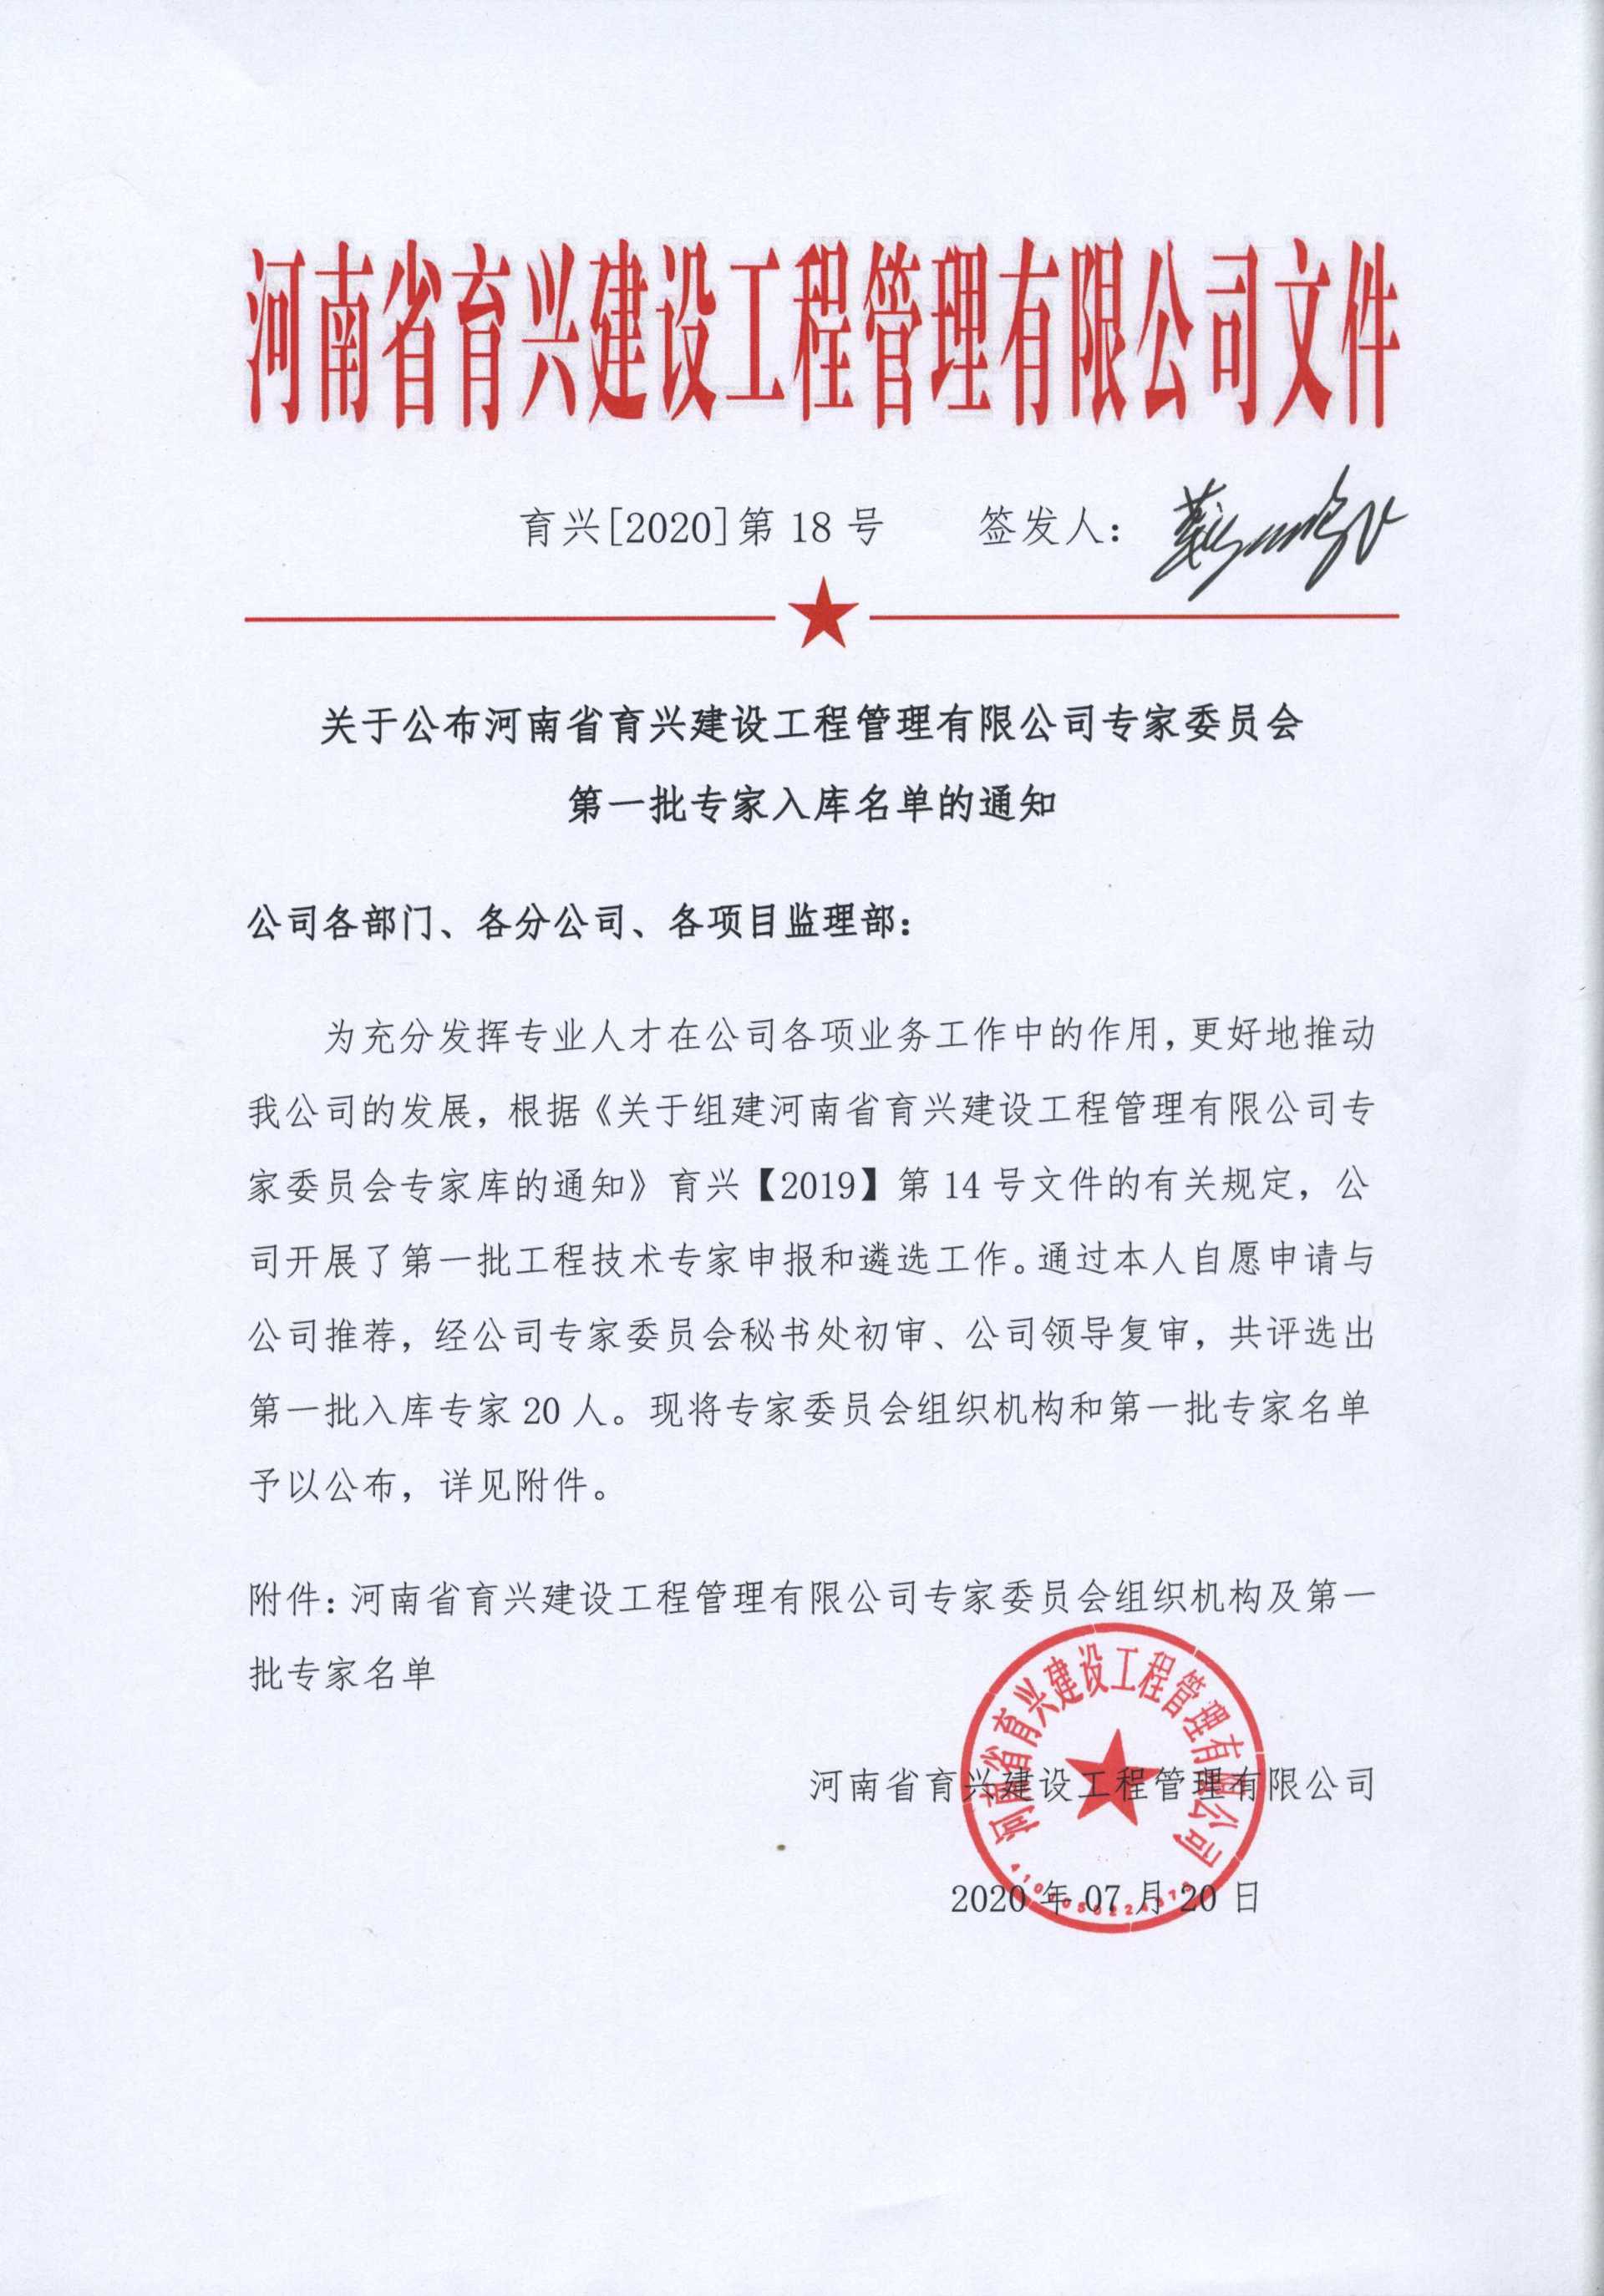 关于公布河南省育兴建设工程管理有限公司专家委员会第一批专家入库名单的通知